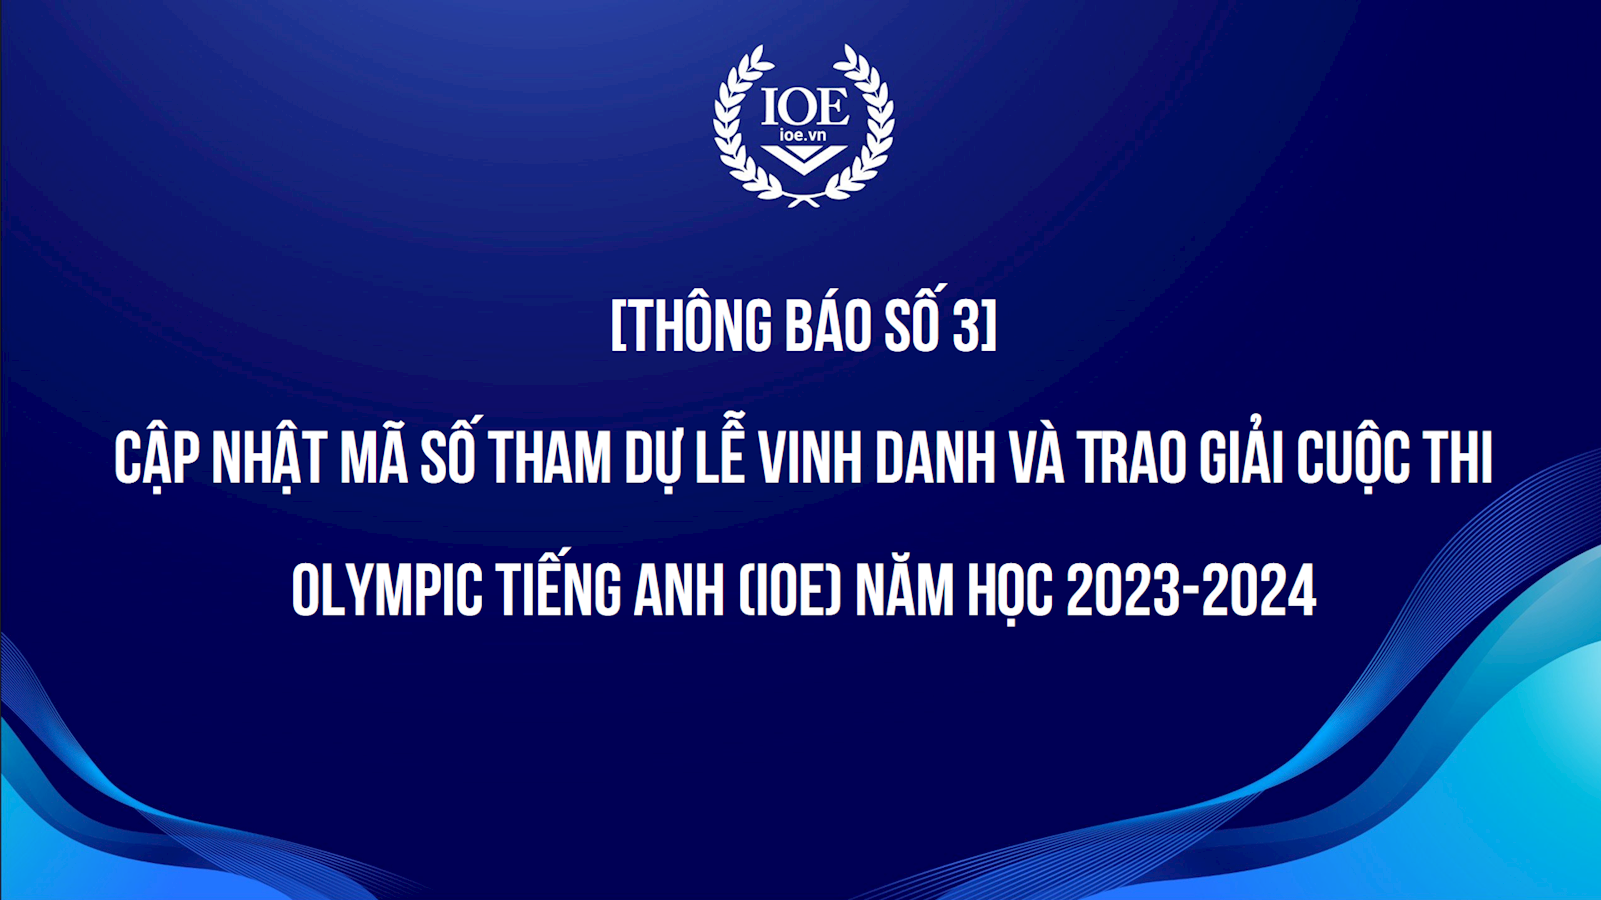 Thông báo số 3: Cập nhật mã số tham dự Lễ Vinh danh và Trao giải cuộc thi Olympic Tiếng Anh (IOE) năm học 2023-2024